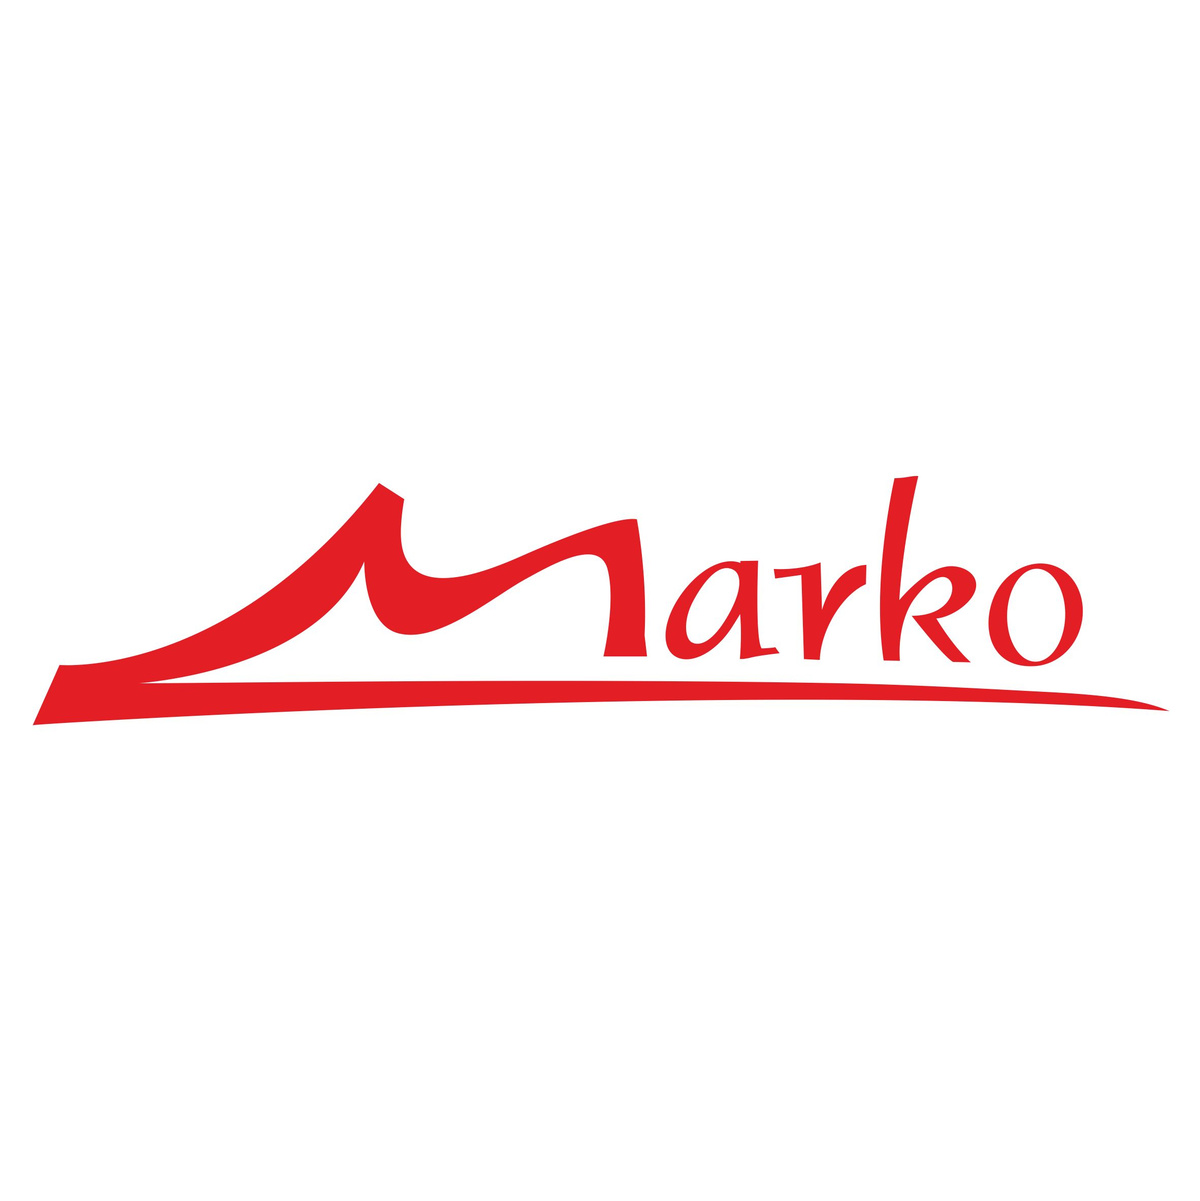 Обувная фабрика Marko является одним из самых крупных российских производителей обуви.